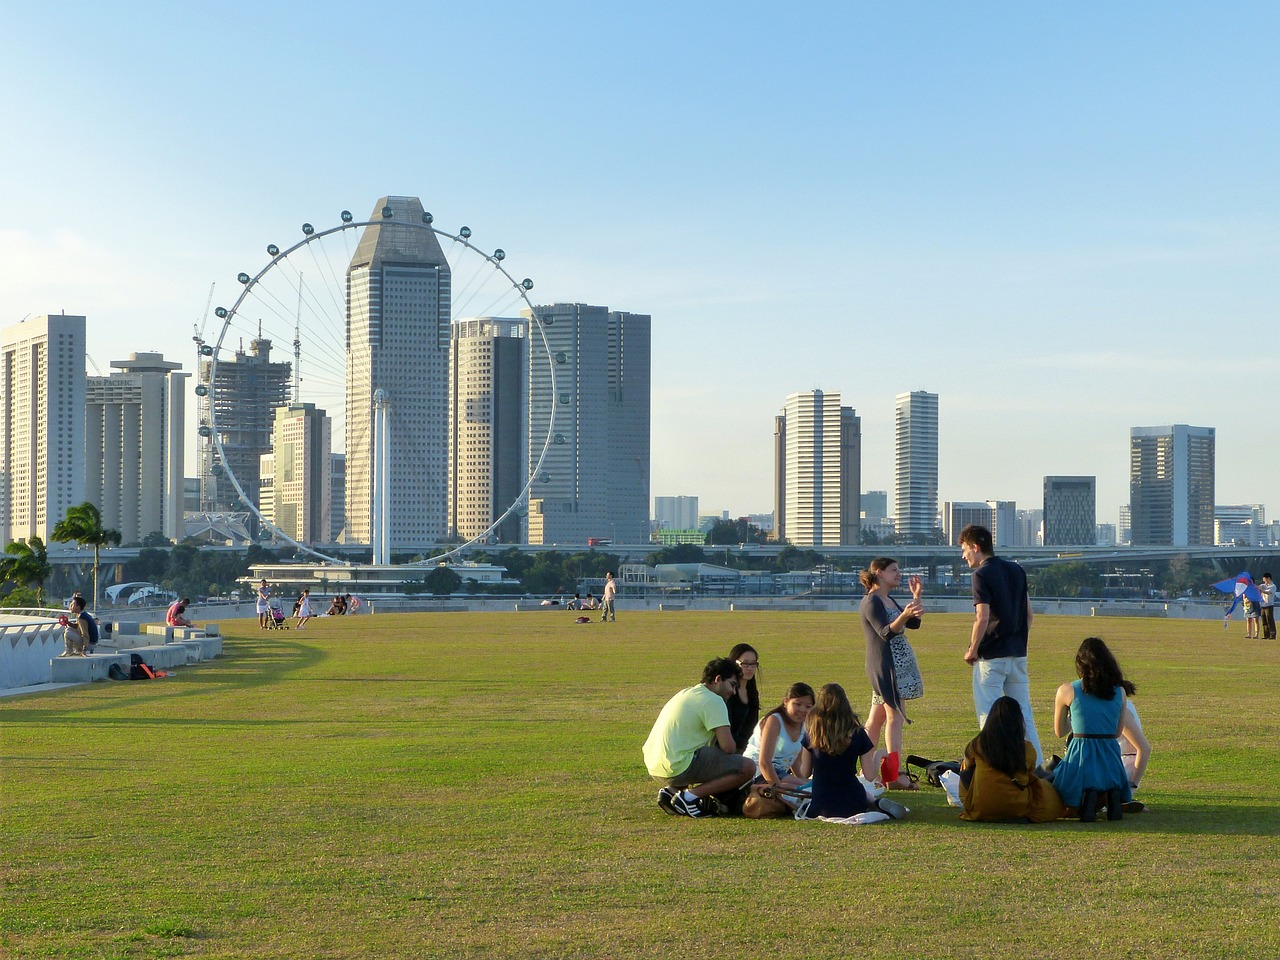 Σιγκαπούρη: Η πιο ευτυχισμένη χώρα της Ασίας - Άγνωστη λέξη η… διαφθορά